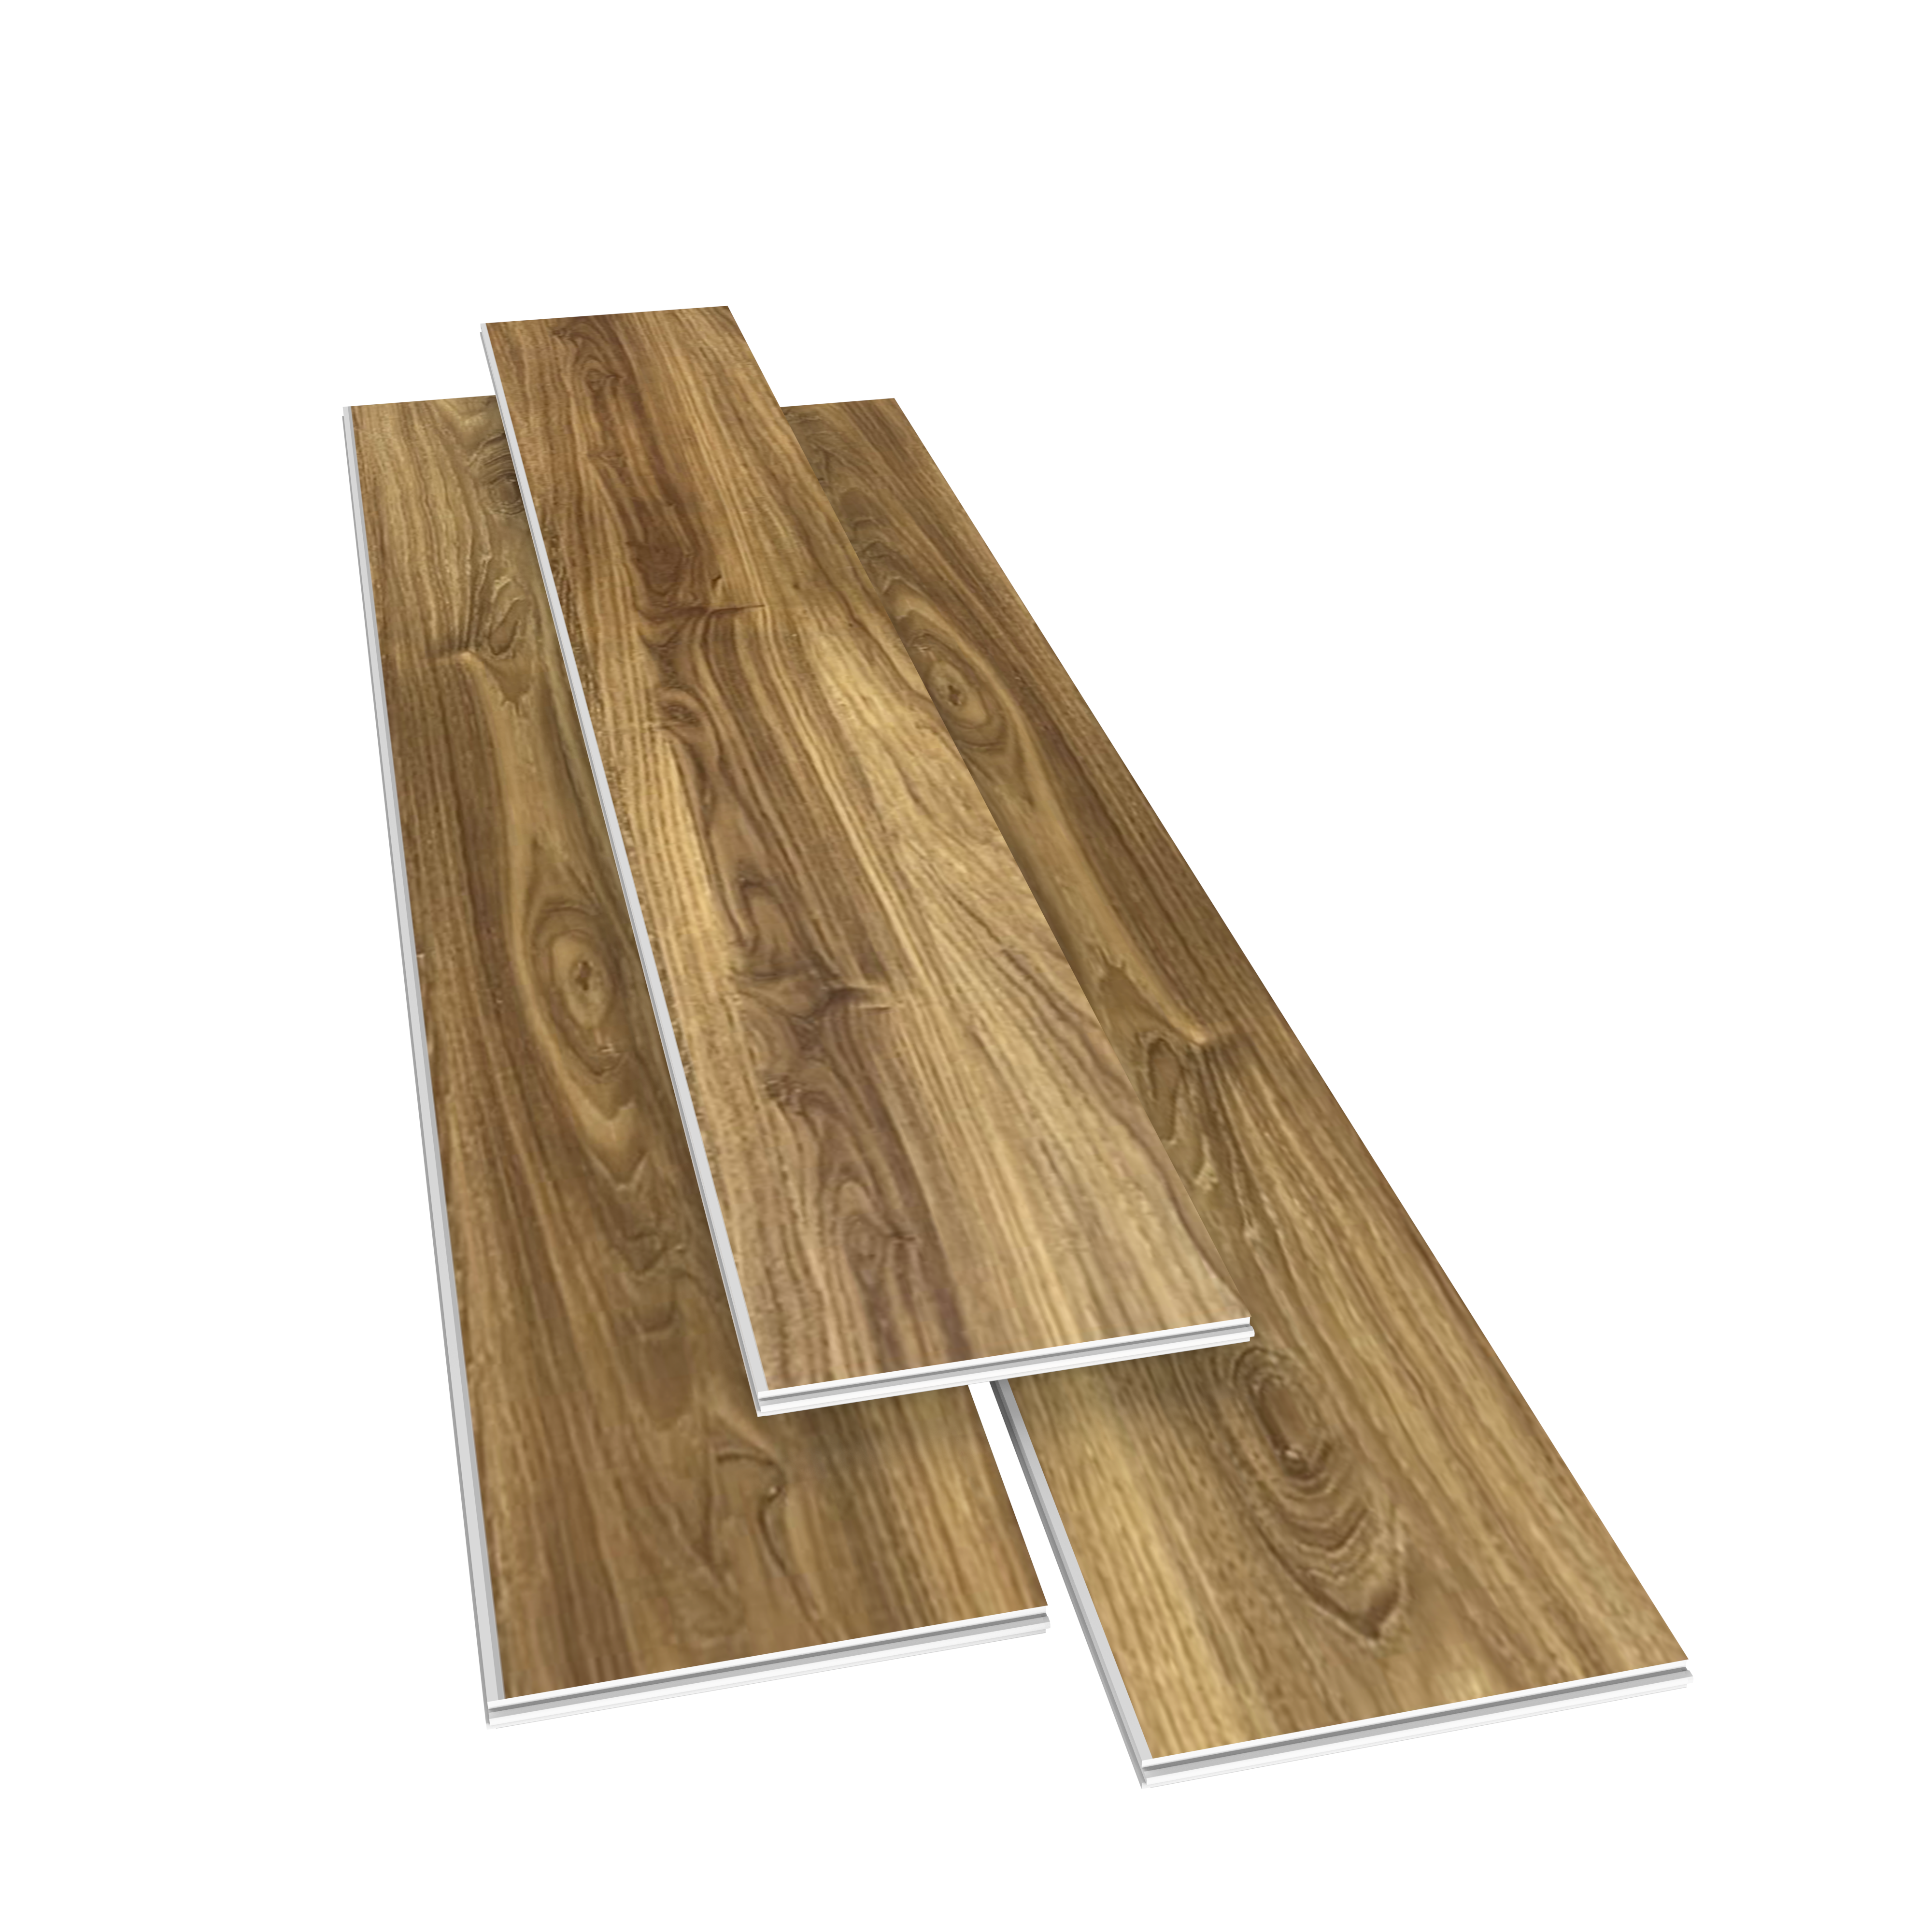 SPC Rigid Core Plank Duchess Flooring, 9" x 60" x 6.5mm, 22 mil Wear Layer